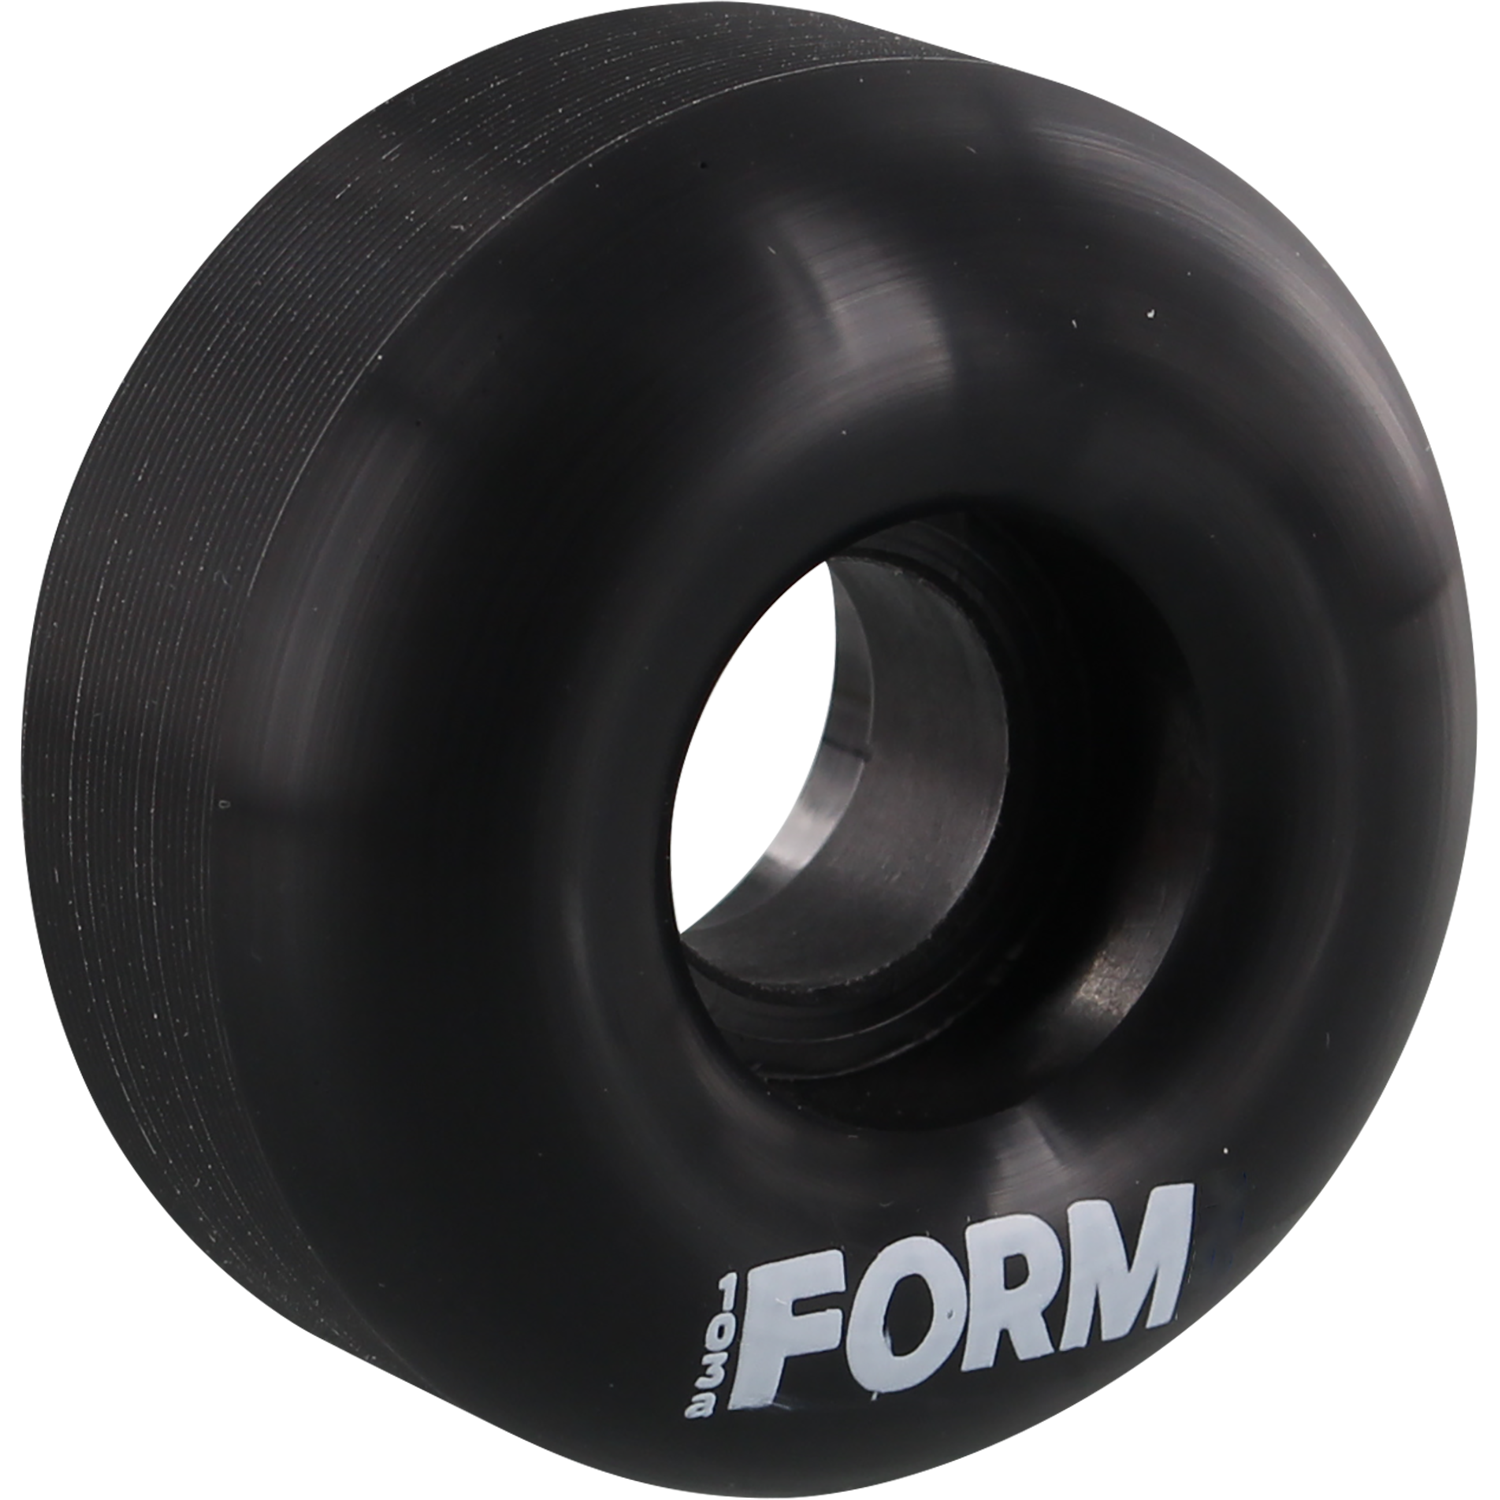 Form Solid 52mm Black Skateboard Wheels (Set of 4)